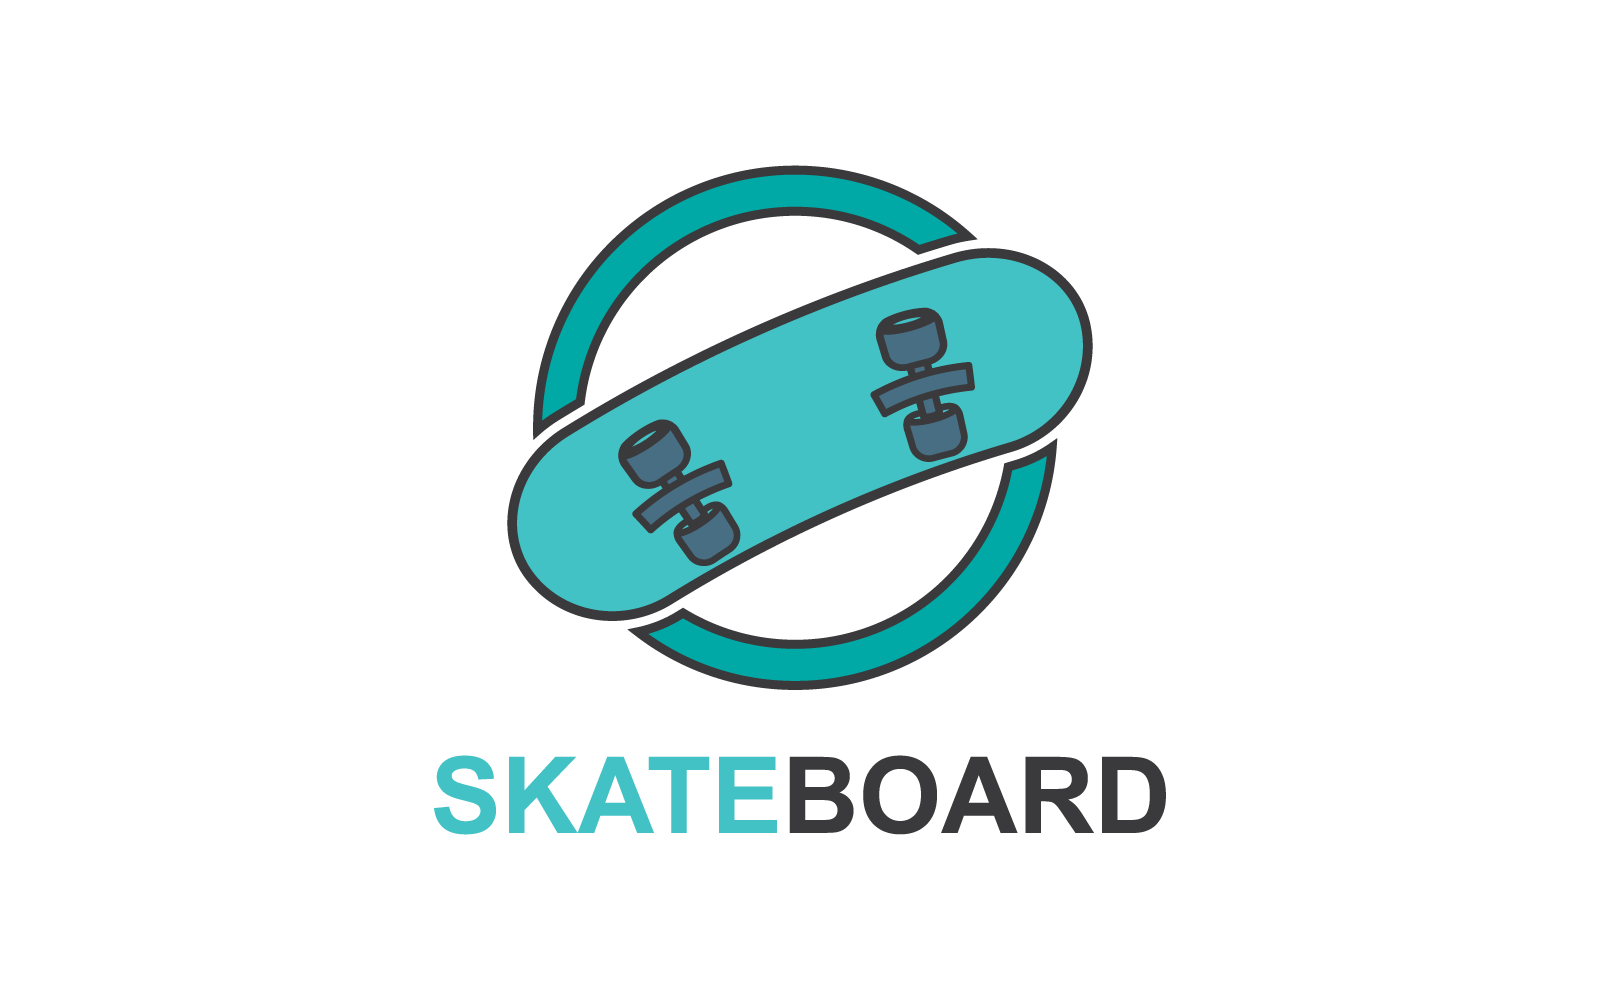 Skateboard logo icon on white background Logo Template